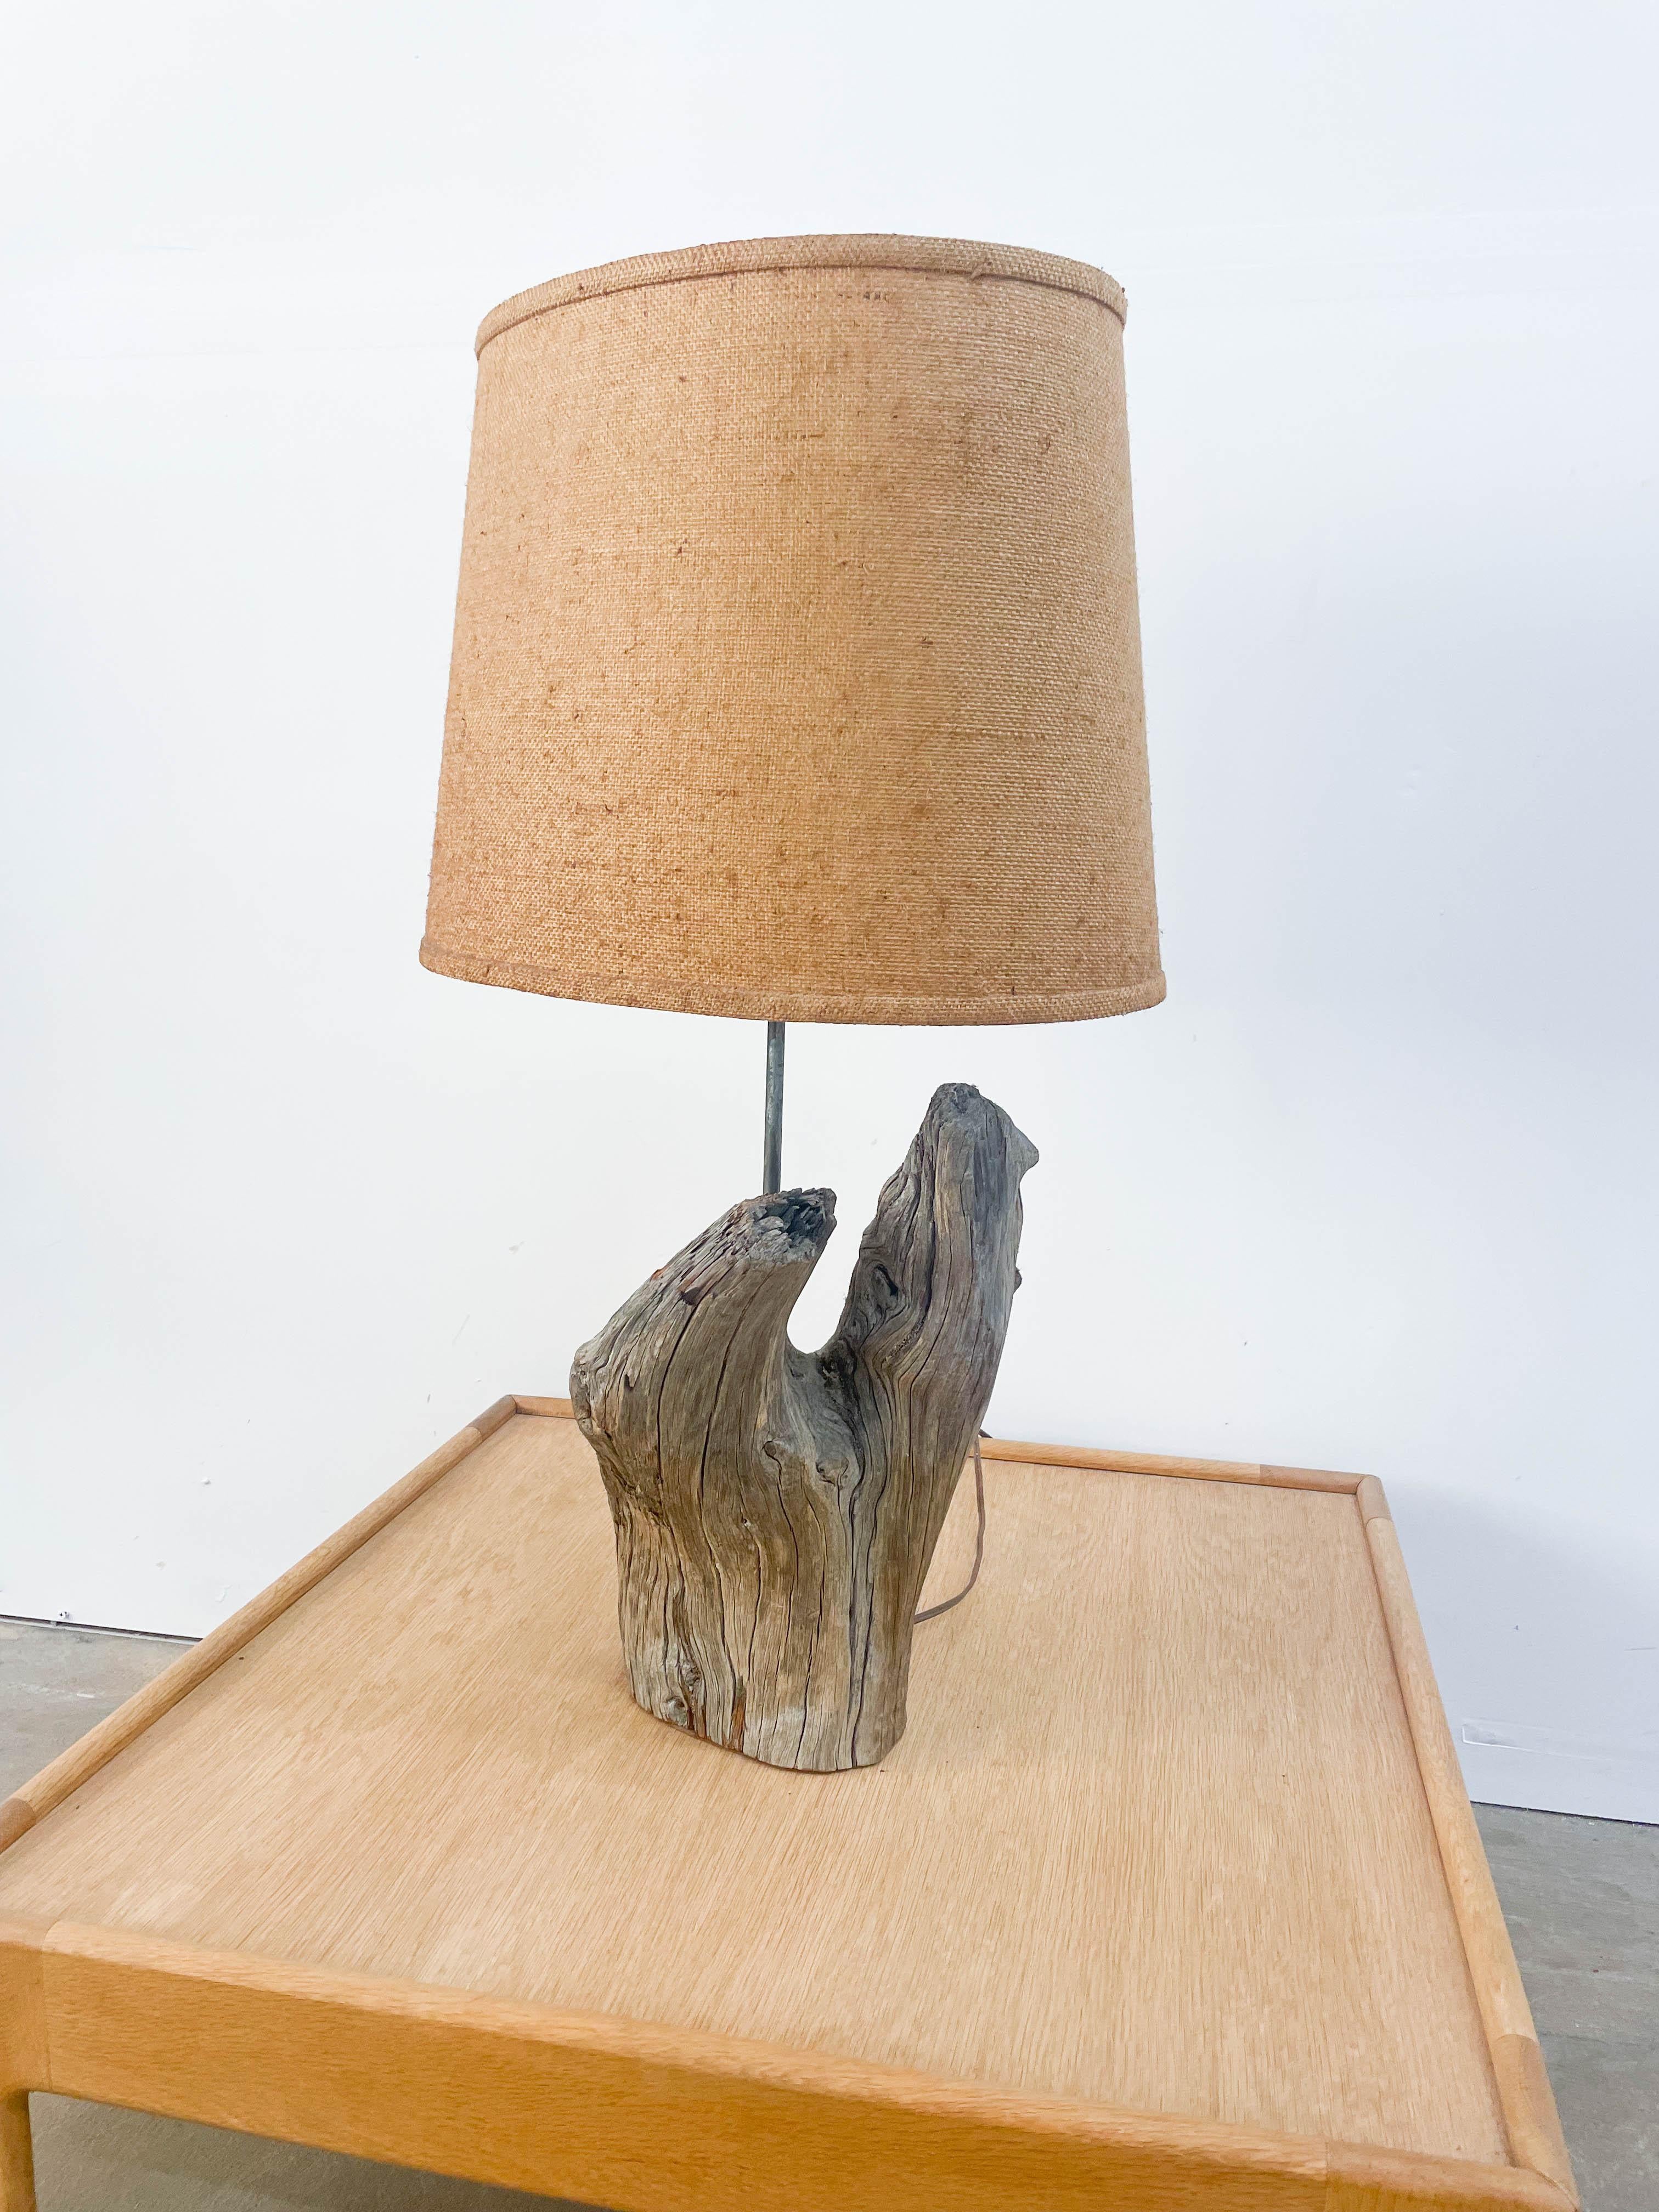 driftwood light fixture